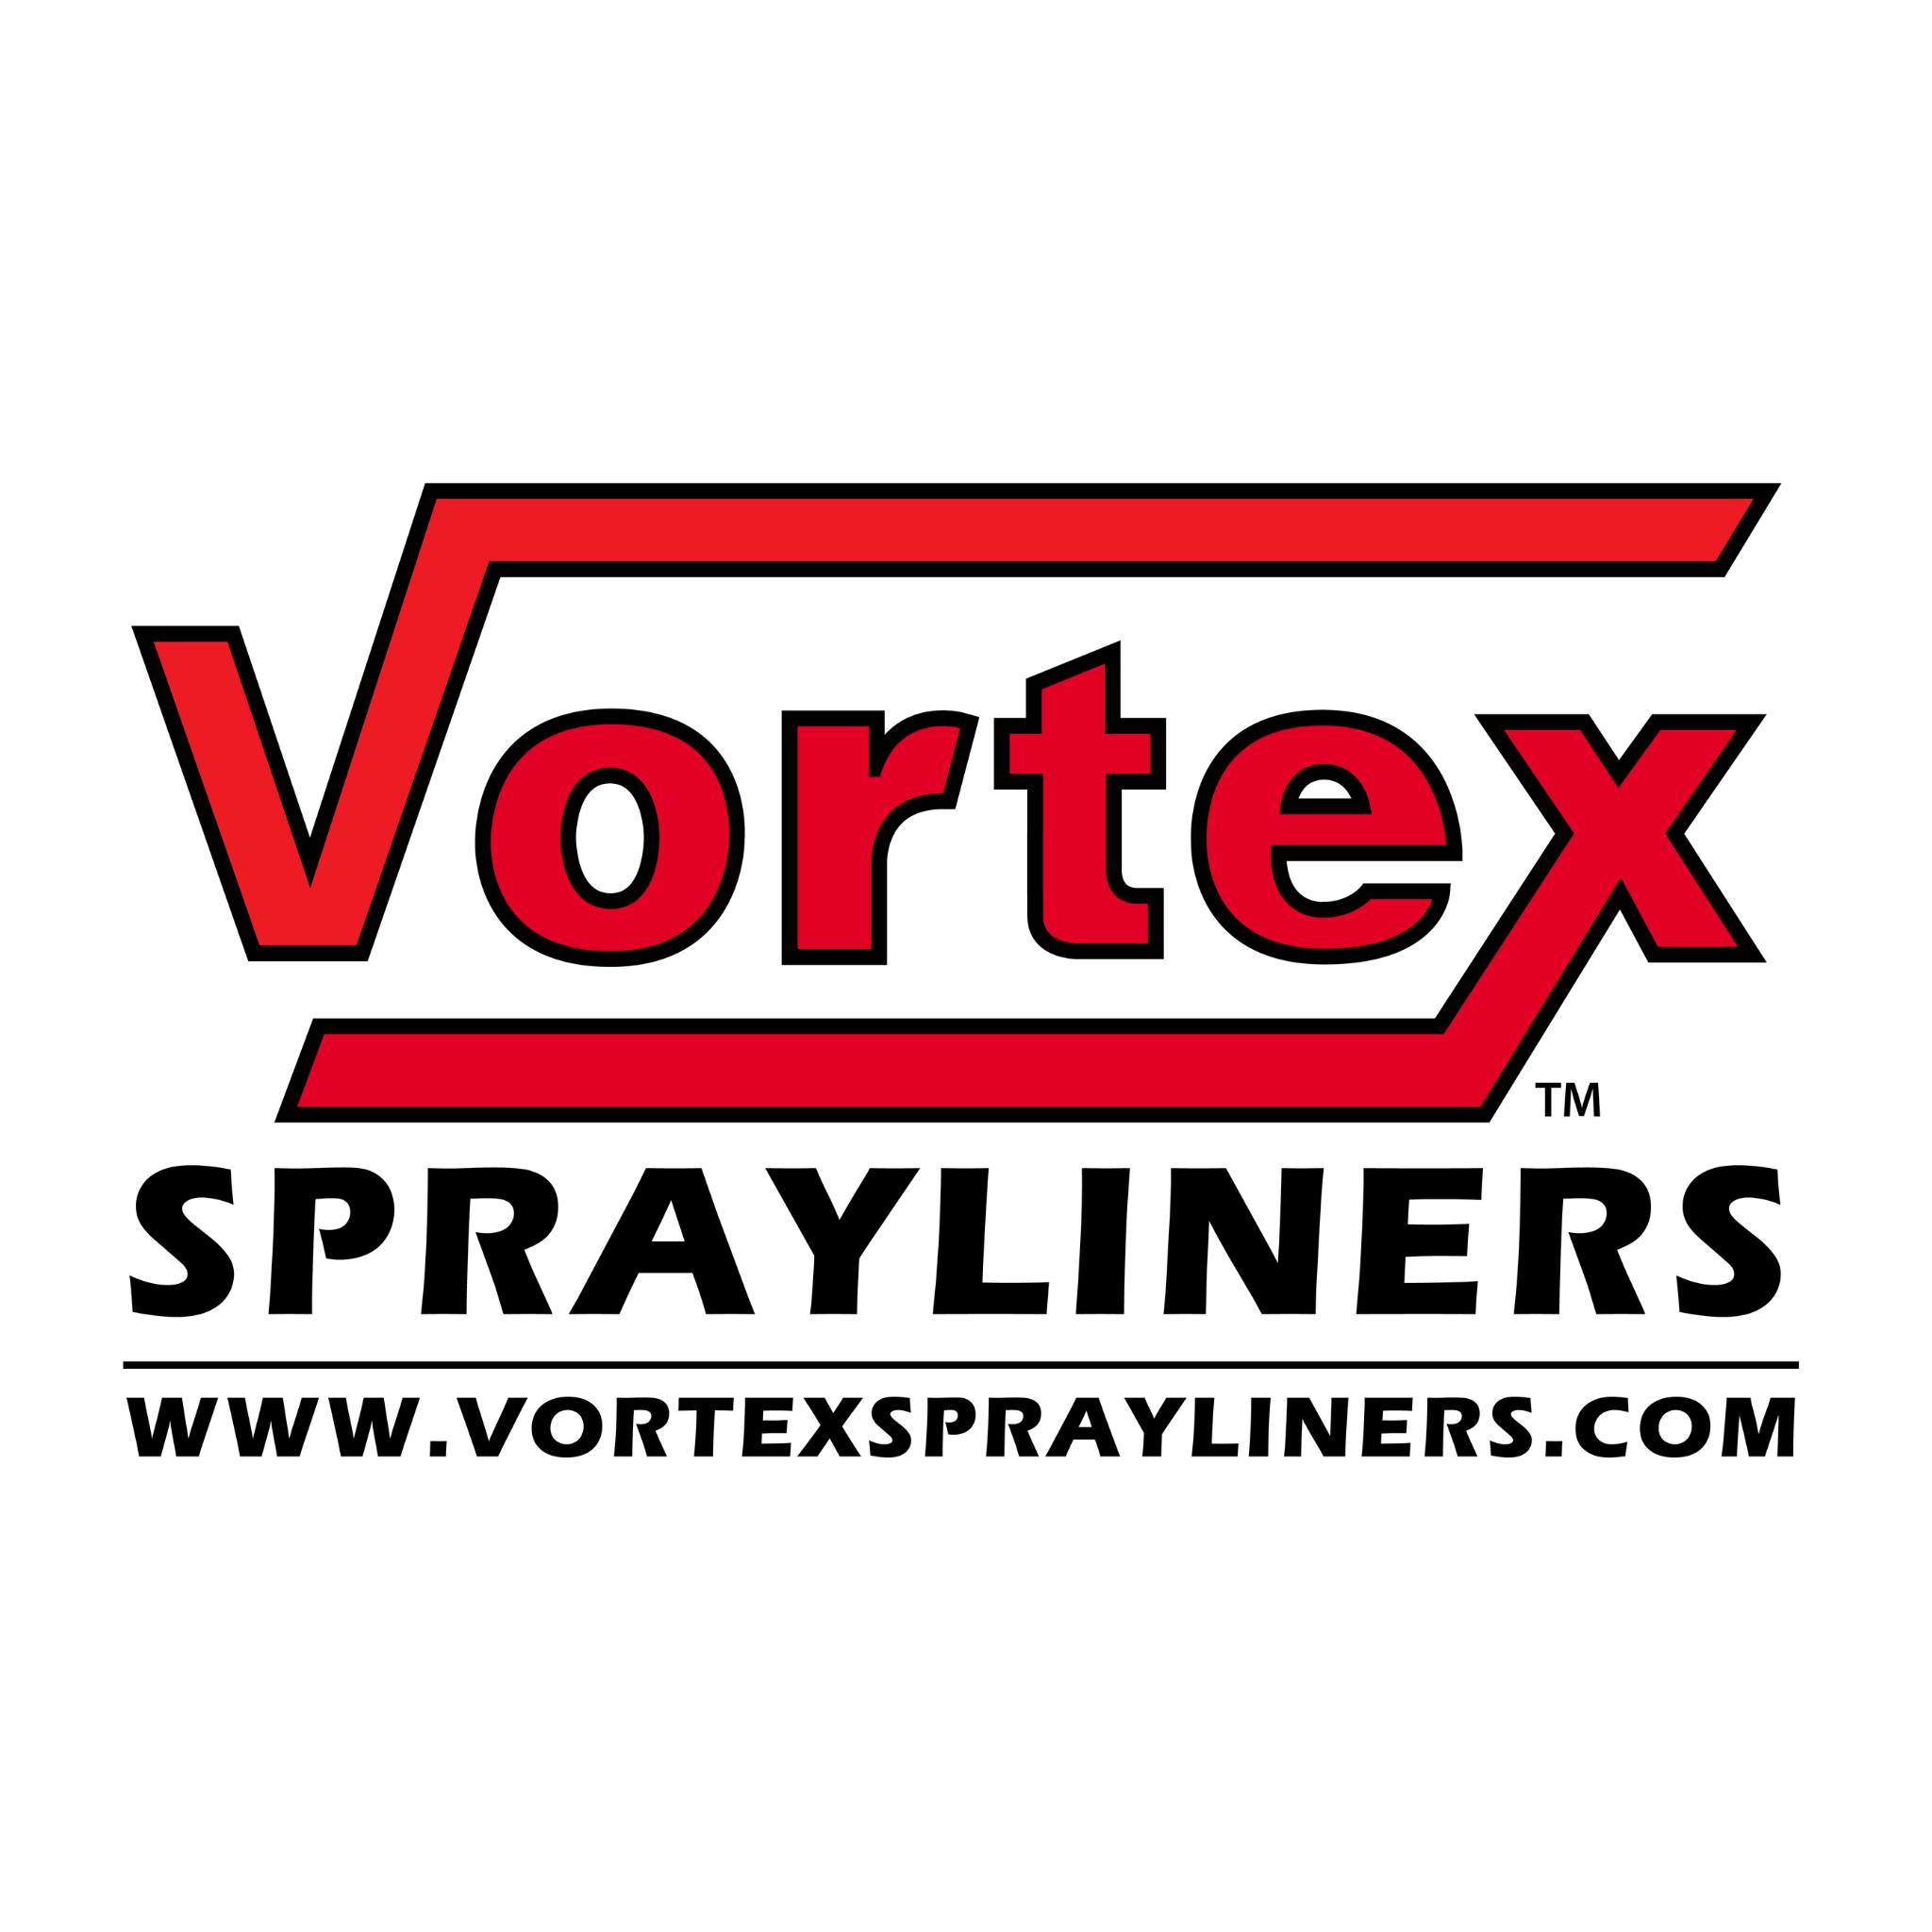 Vortex Sprayliners